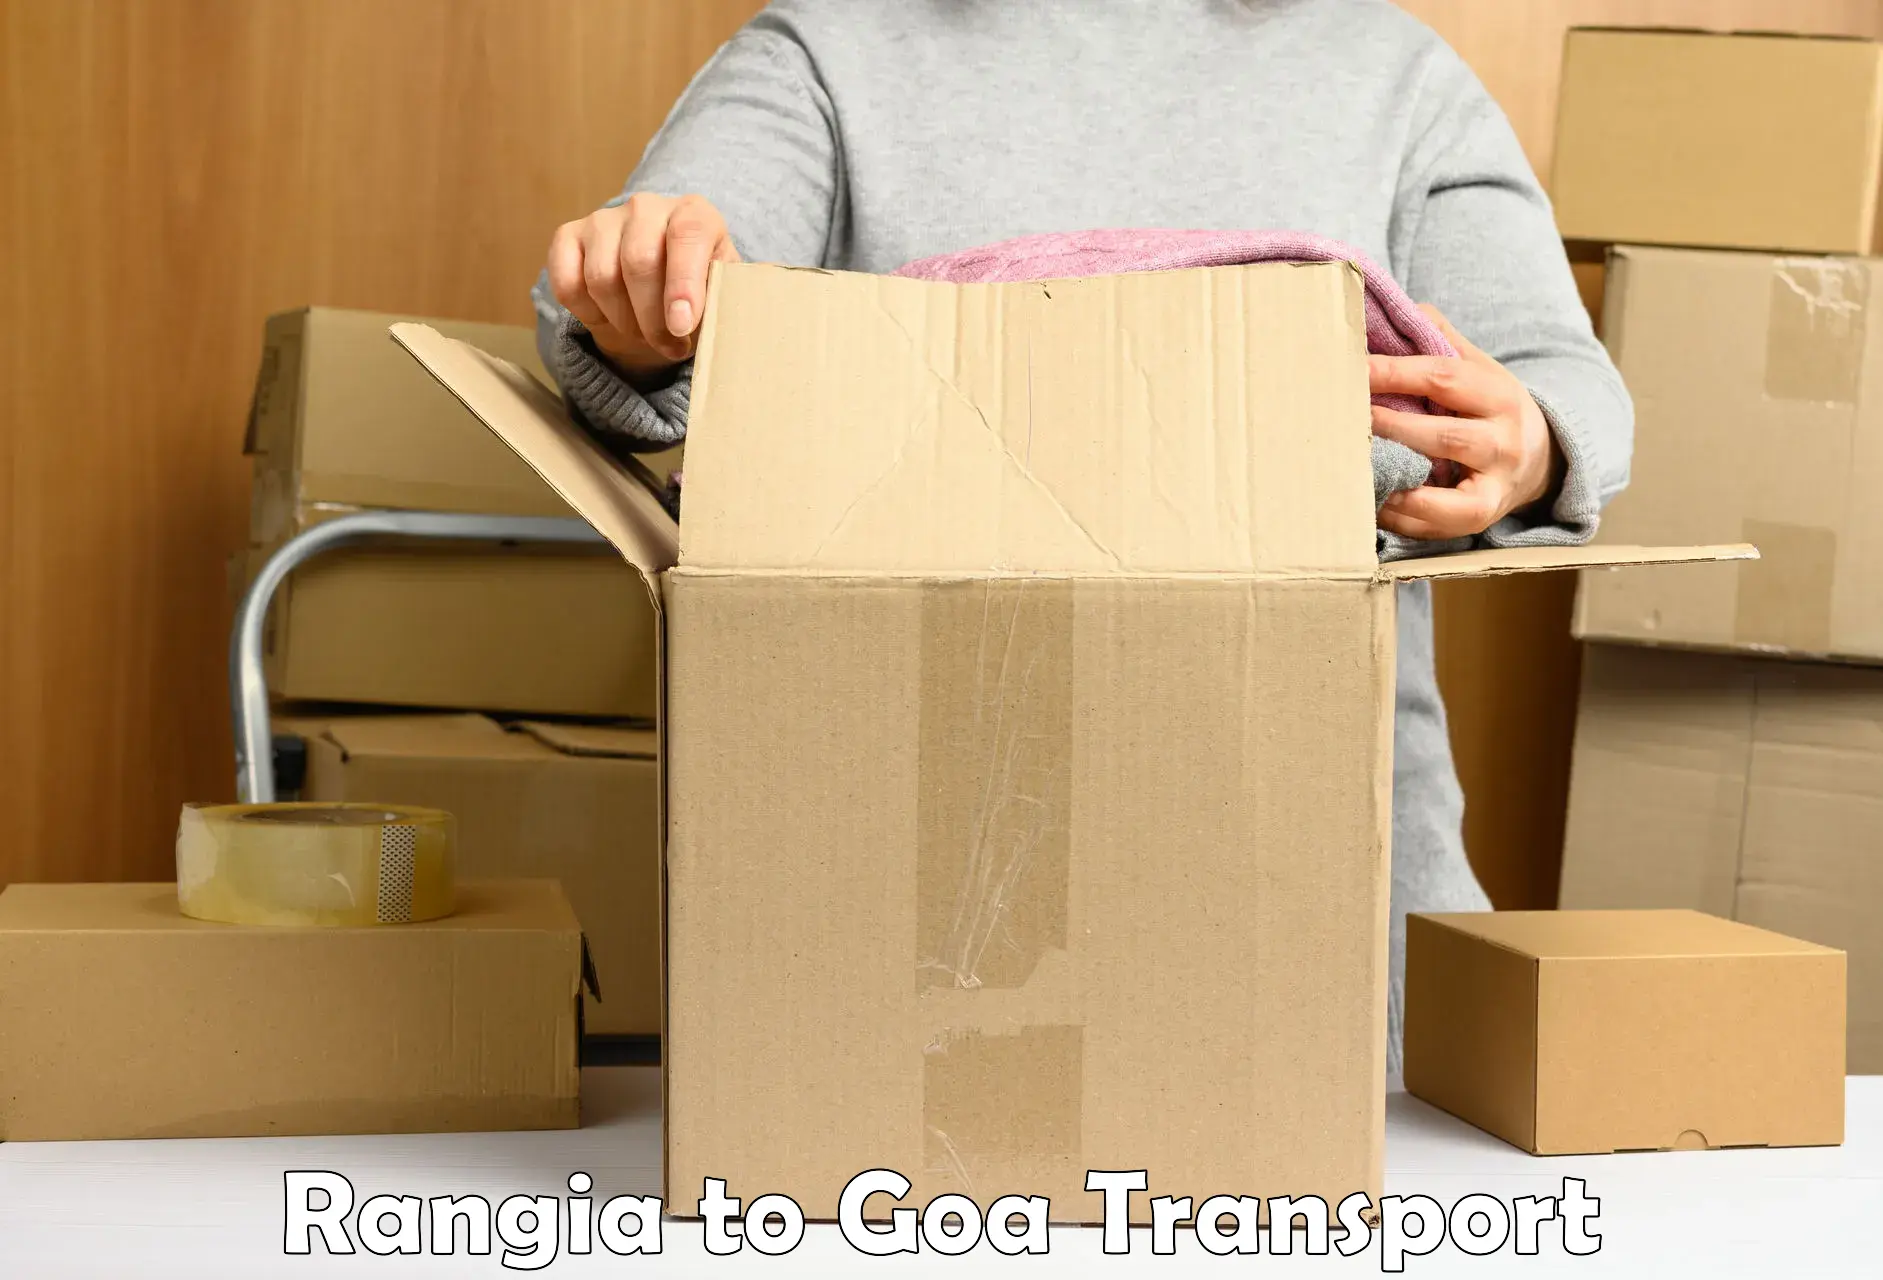 Transport shared services Rangia to Mormugao Port